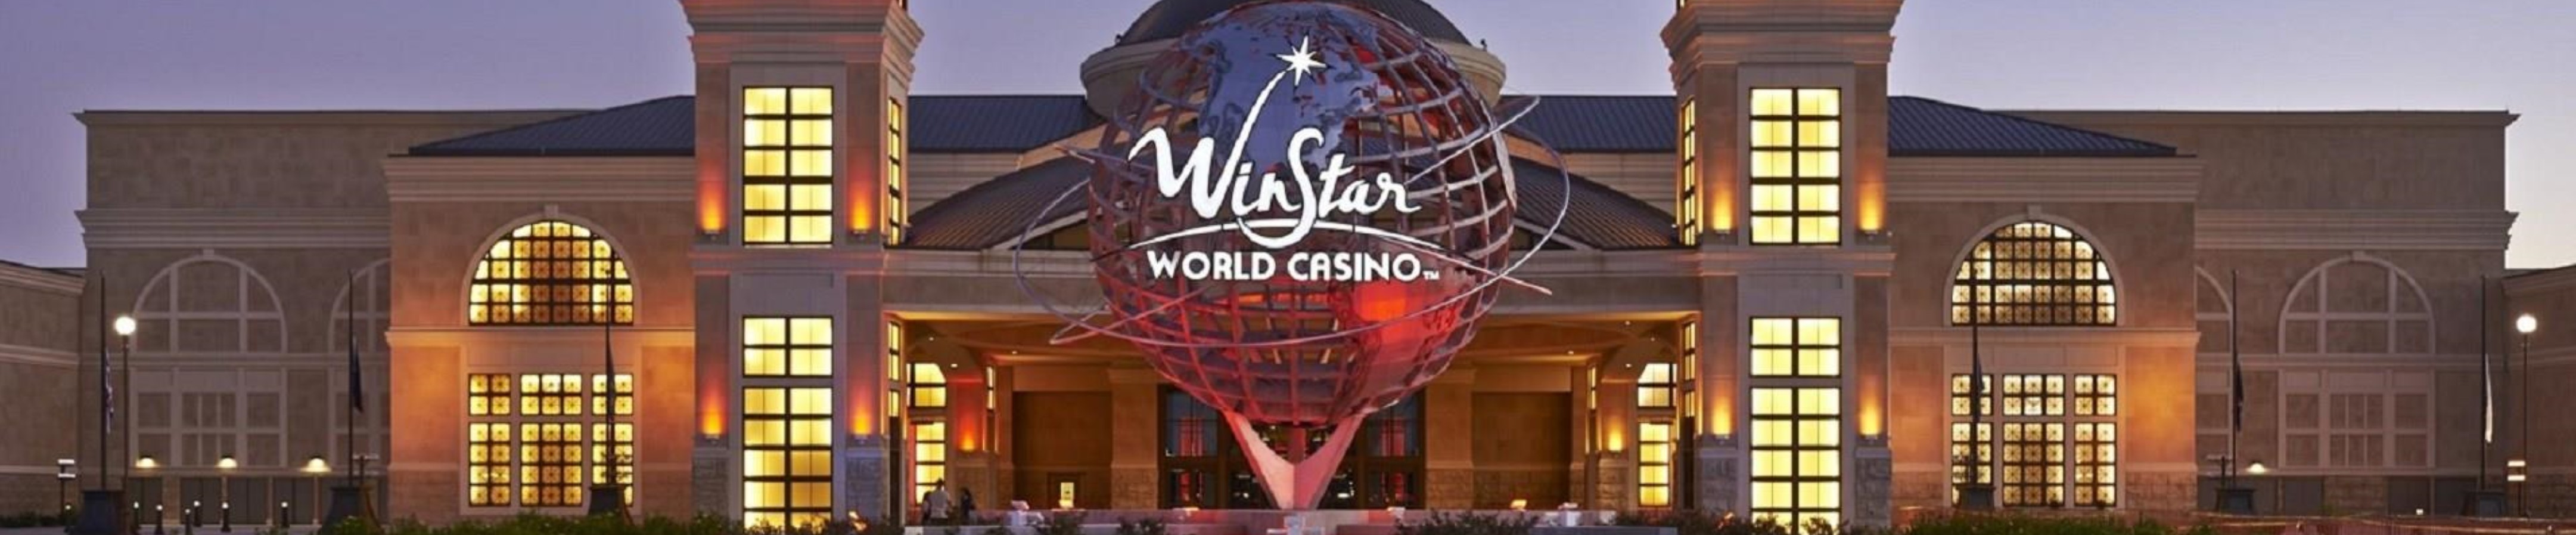 How many casinos are in oklahoma city